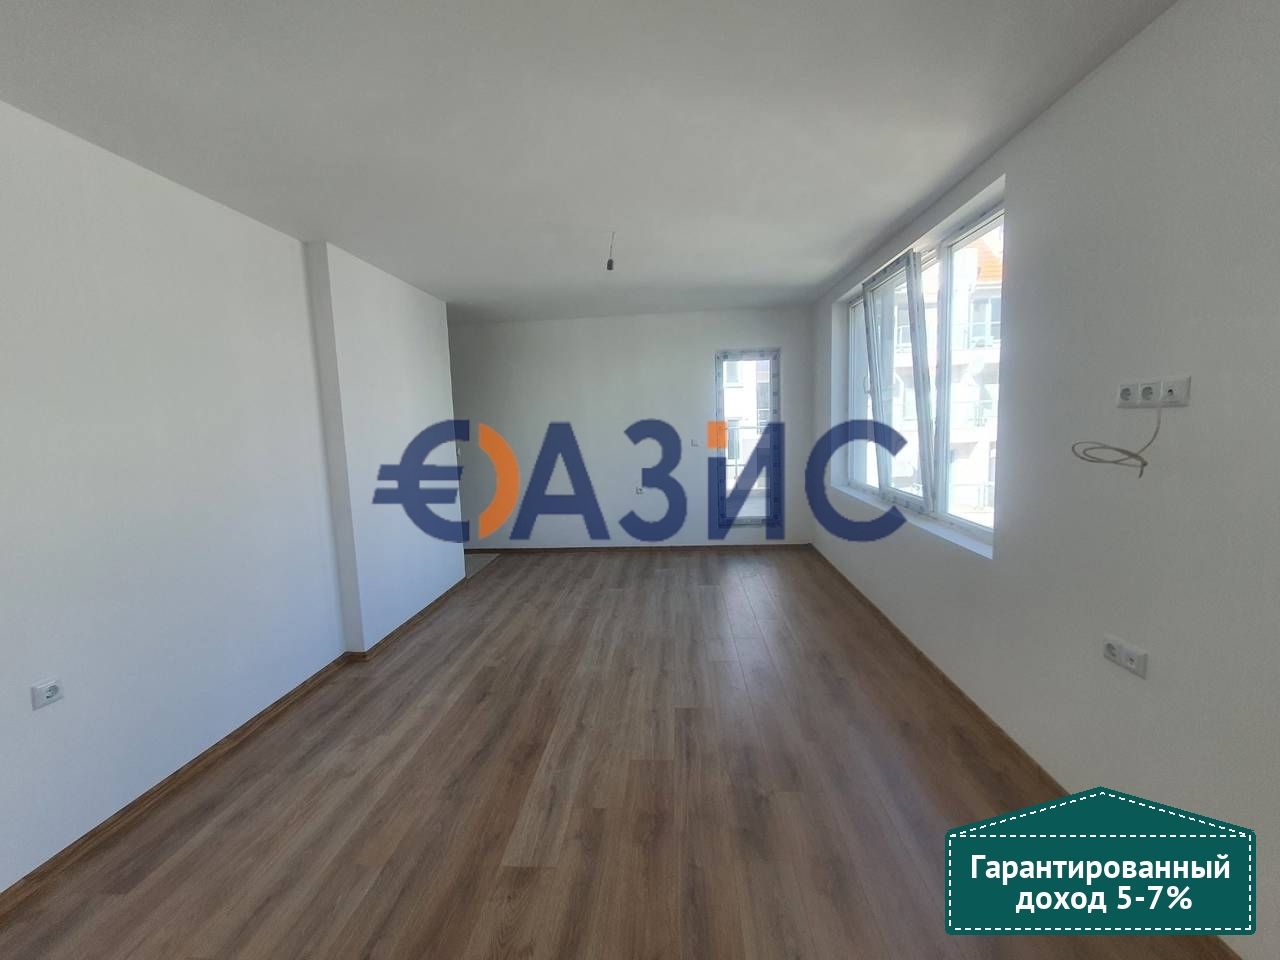 Apartment in Pomorie, Bulgaria, 62.8 sq.m - picture 1